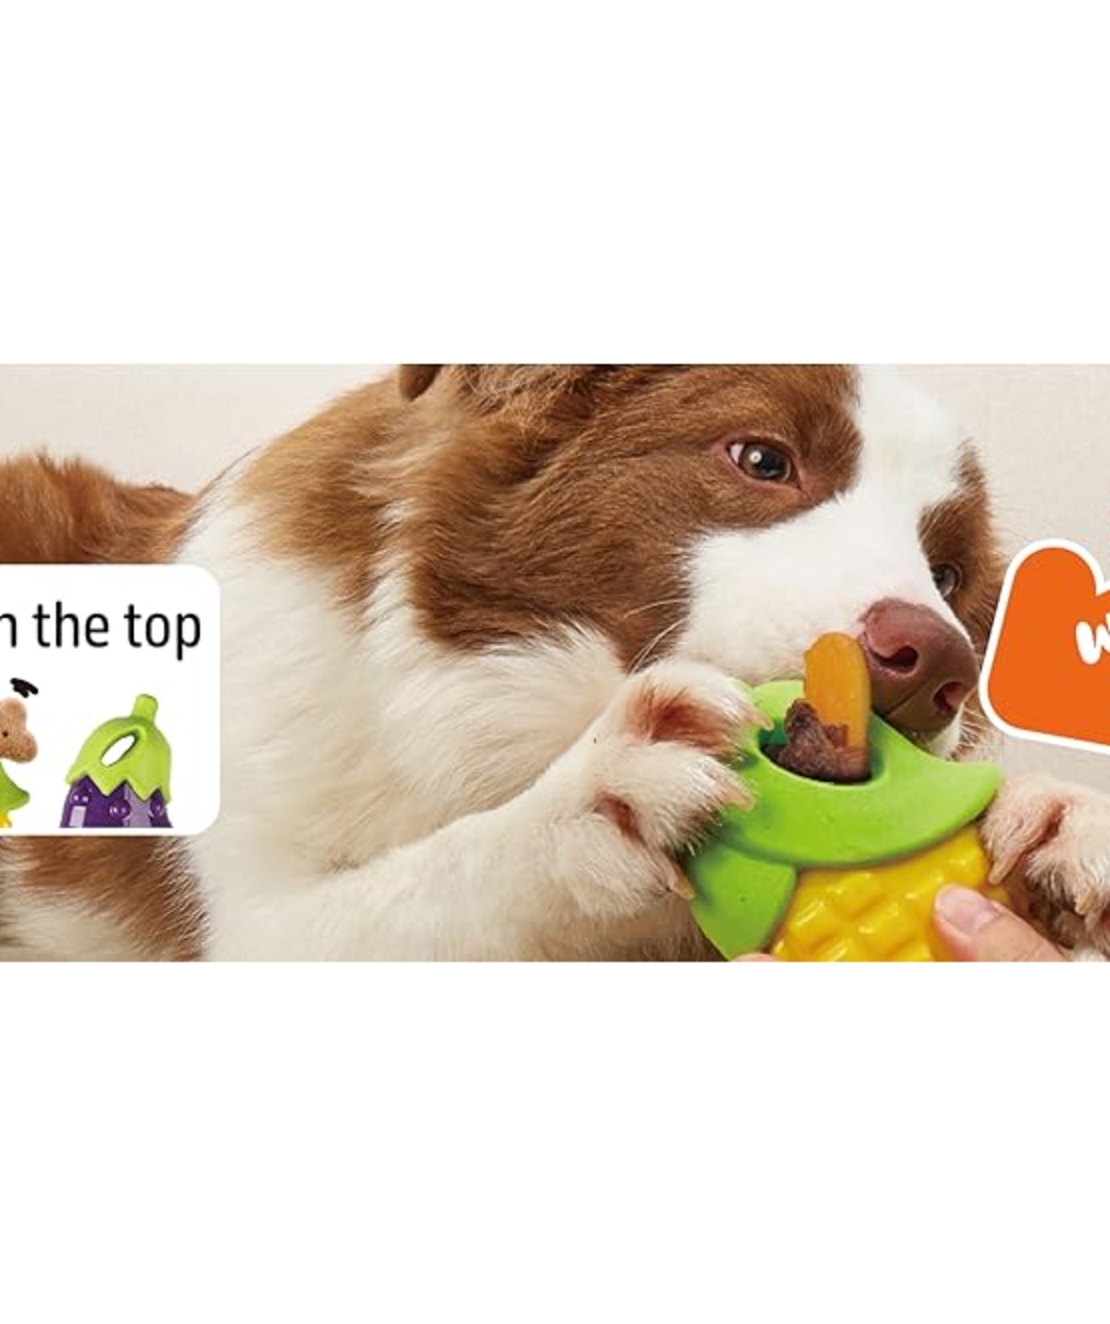 פופוס צעצוע גזר מצפצף לכלבים FOFOS